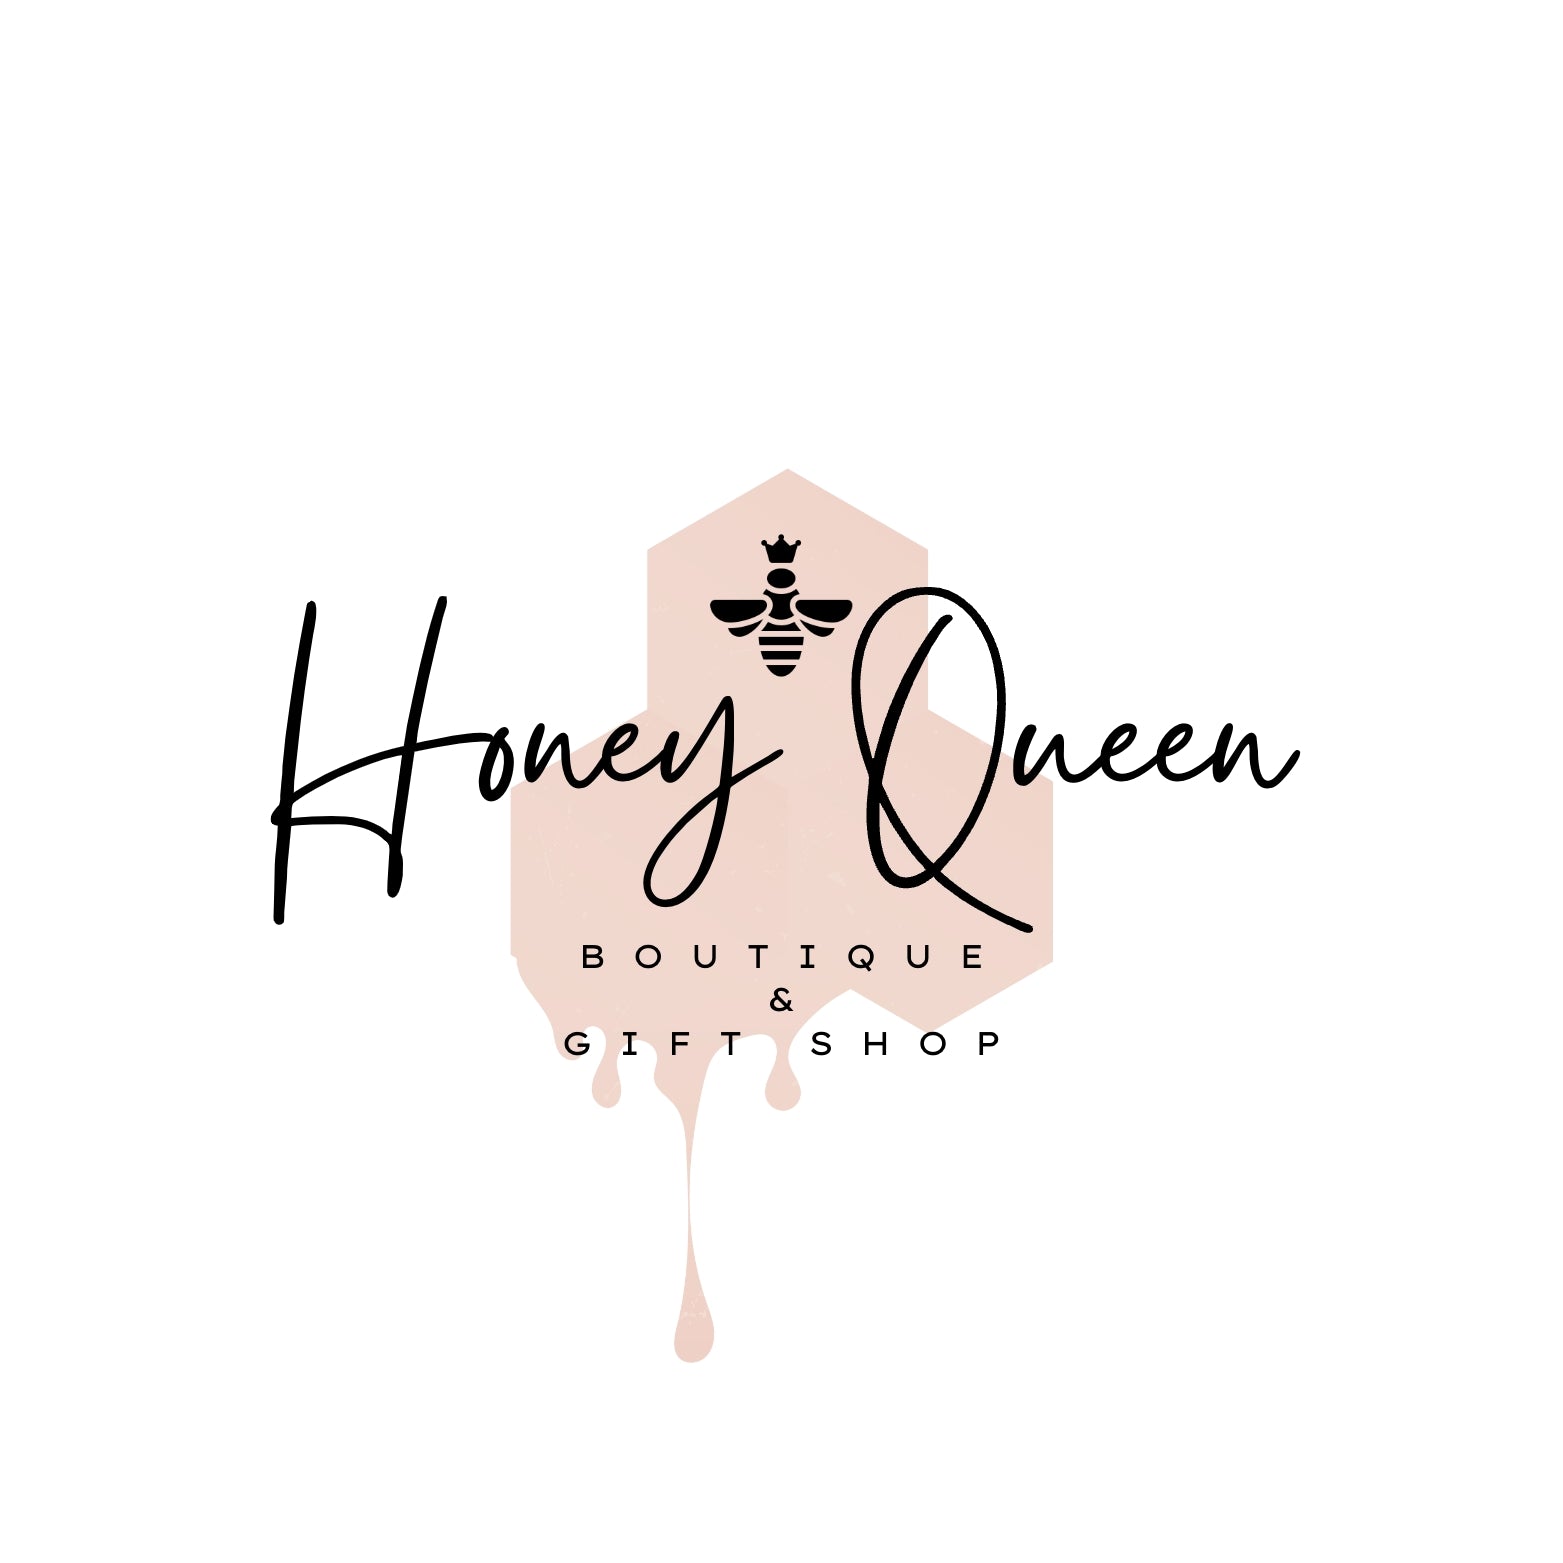 HONEY QUEEN LLC